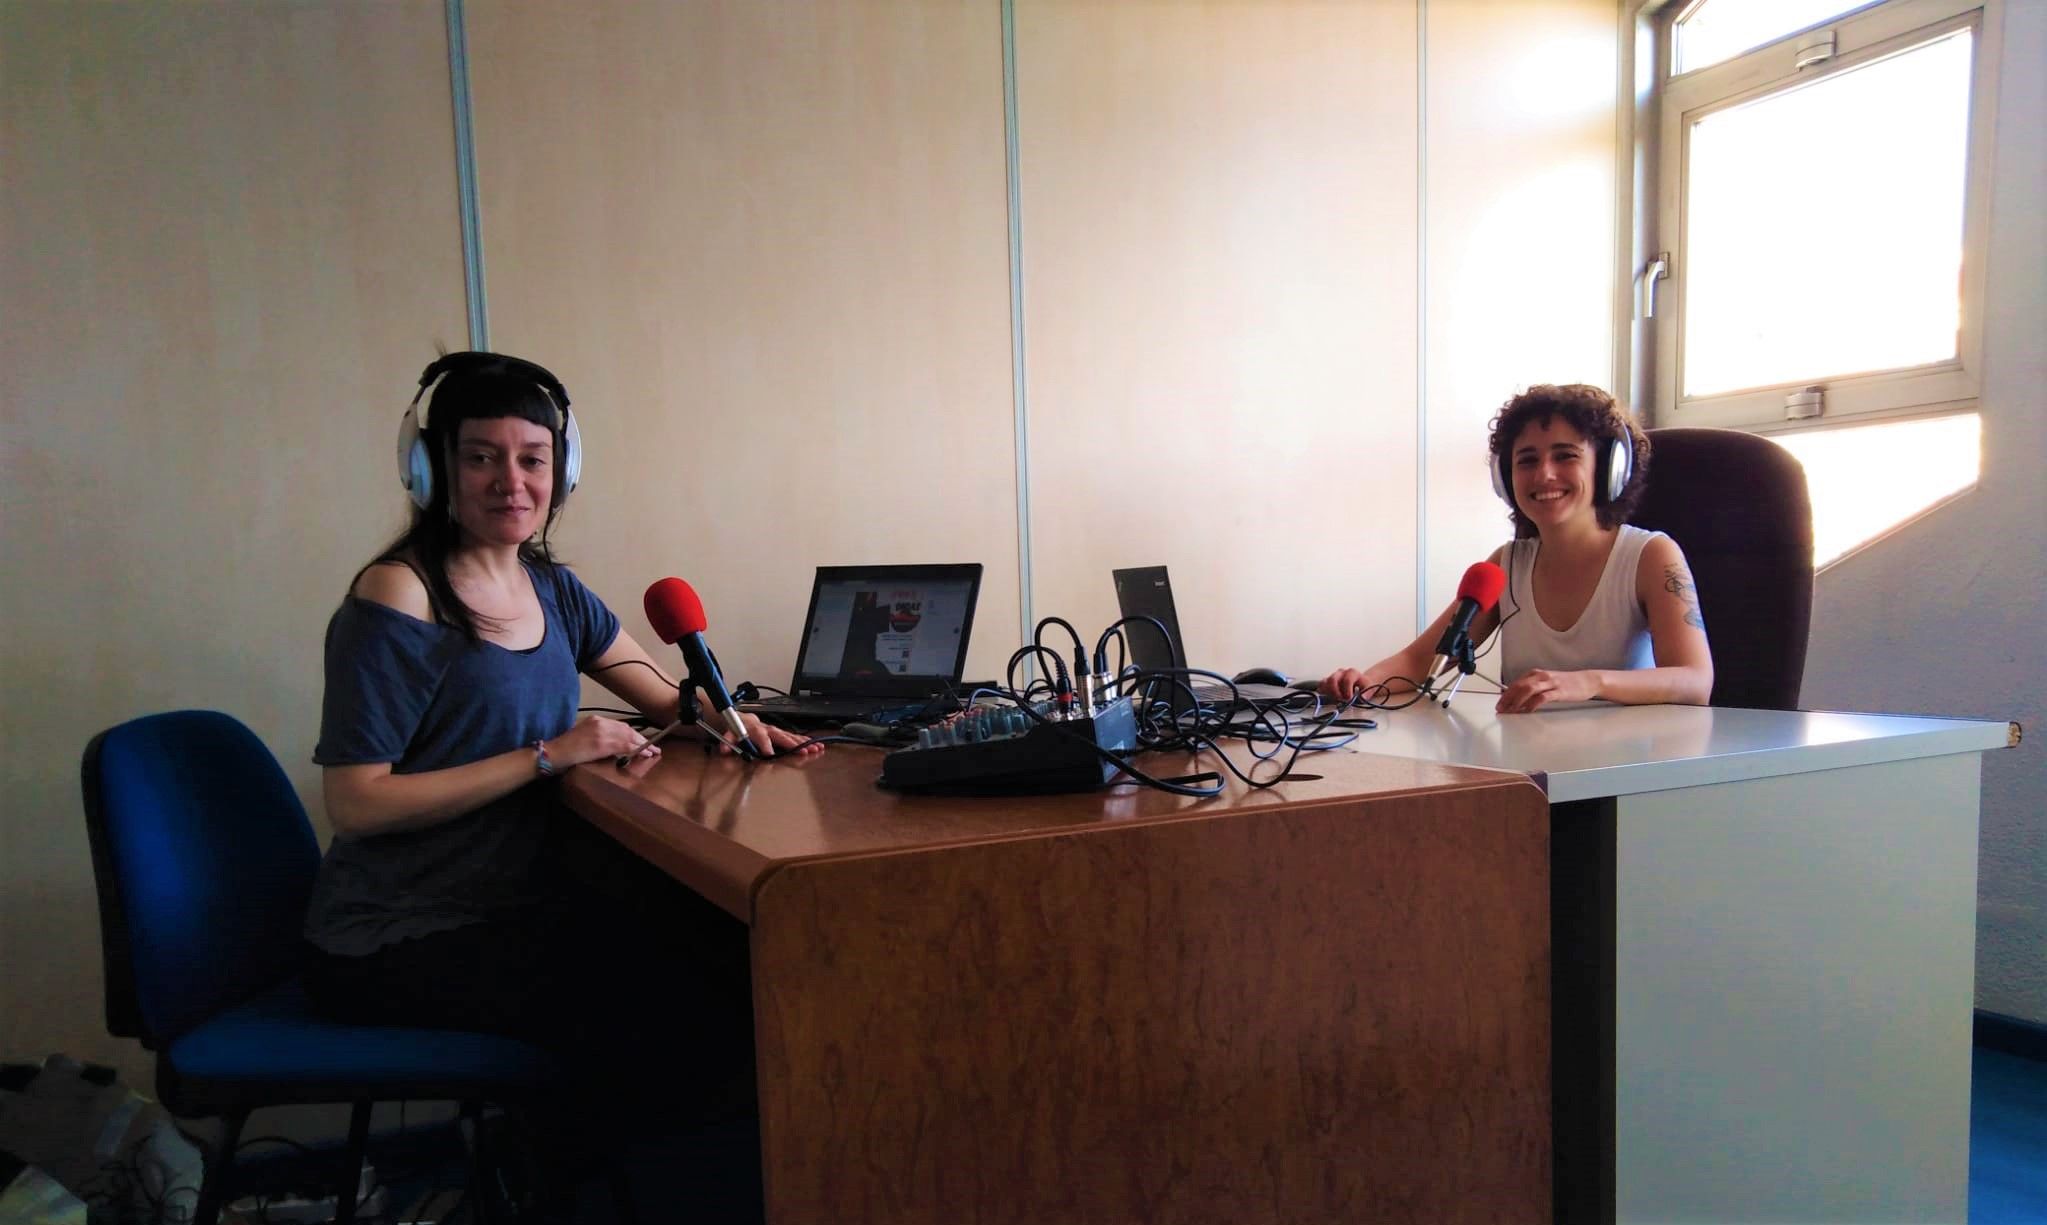 Ondas mediadoras: un programa de podcasts sobre la mediación en el distrito de San Blas-Canillejas